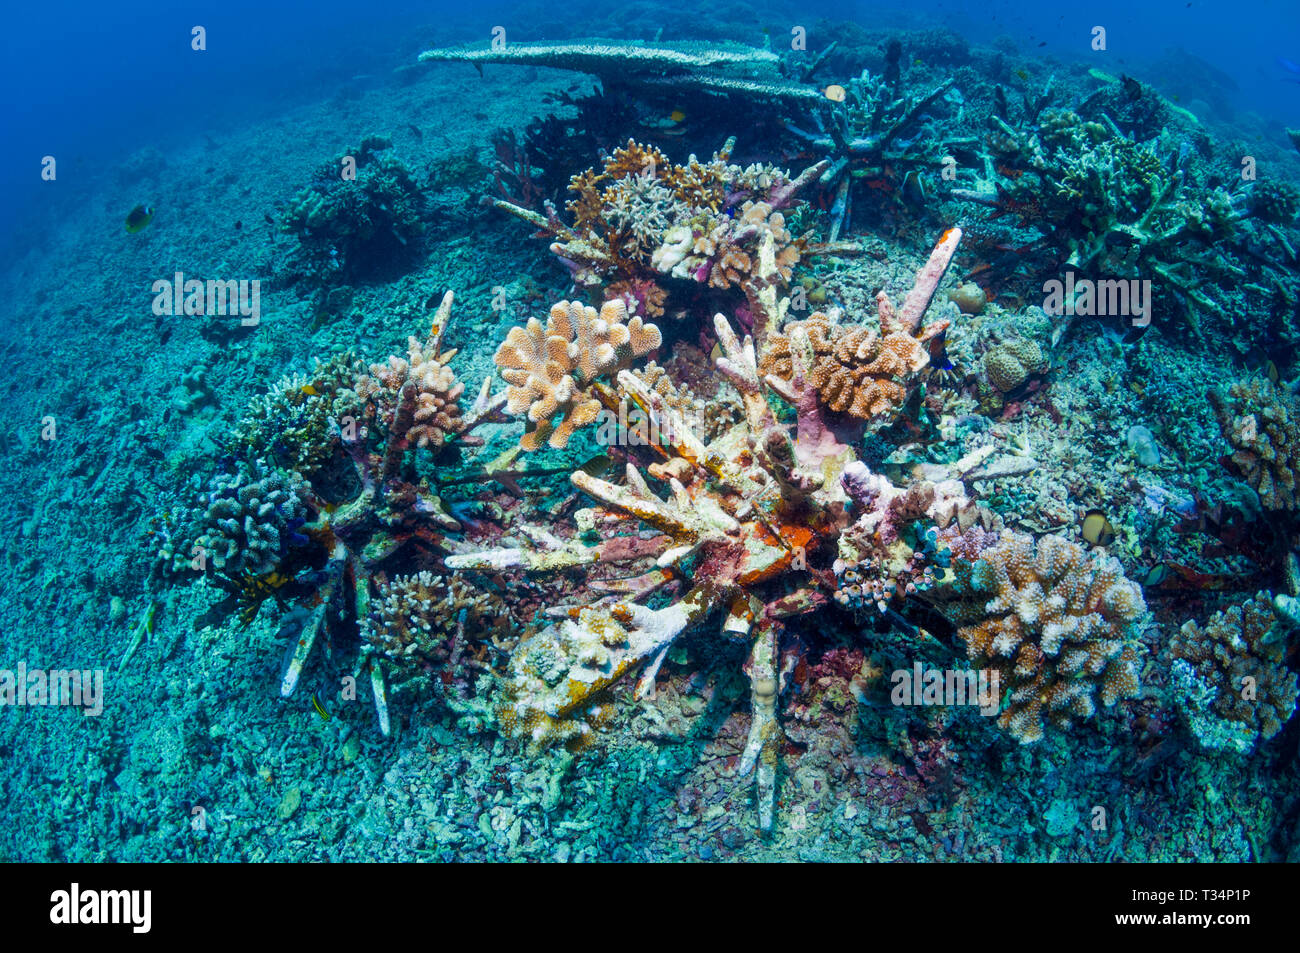 Reef artificiale. Questi impulso breve 'eco barriere coralline' sono progettati per stabilizzare il coral macerie sulle barriere coralline danneggiate, dando coralli duri la possibilità di crescere. Bunaken Foto Stock